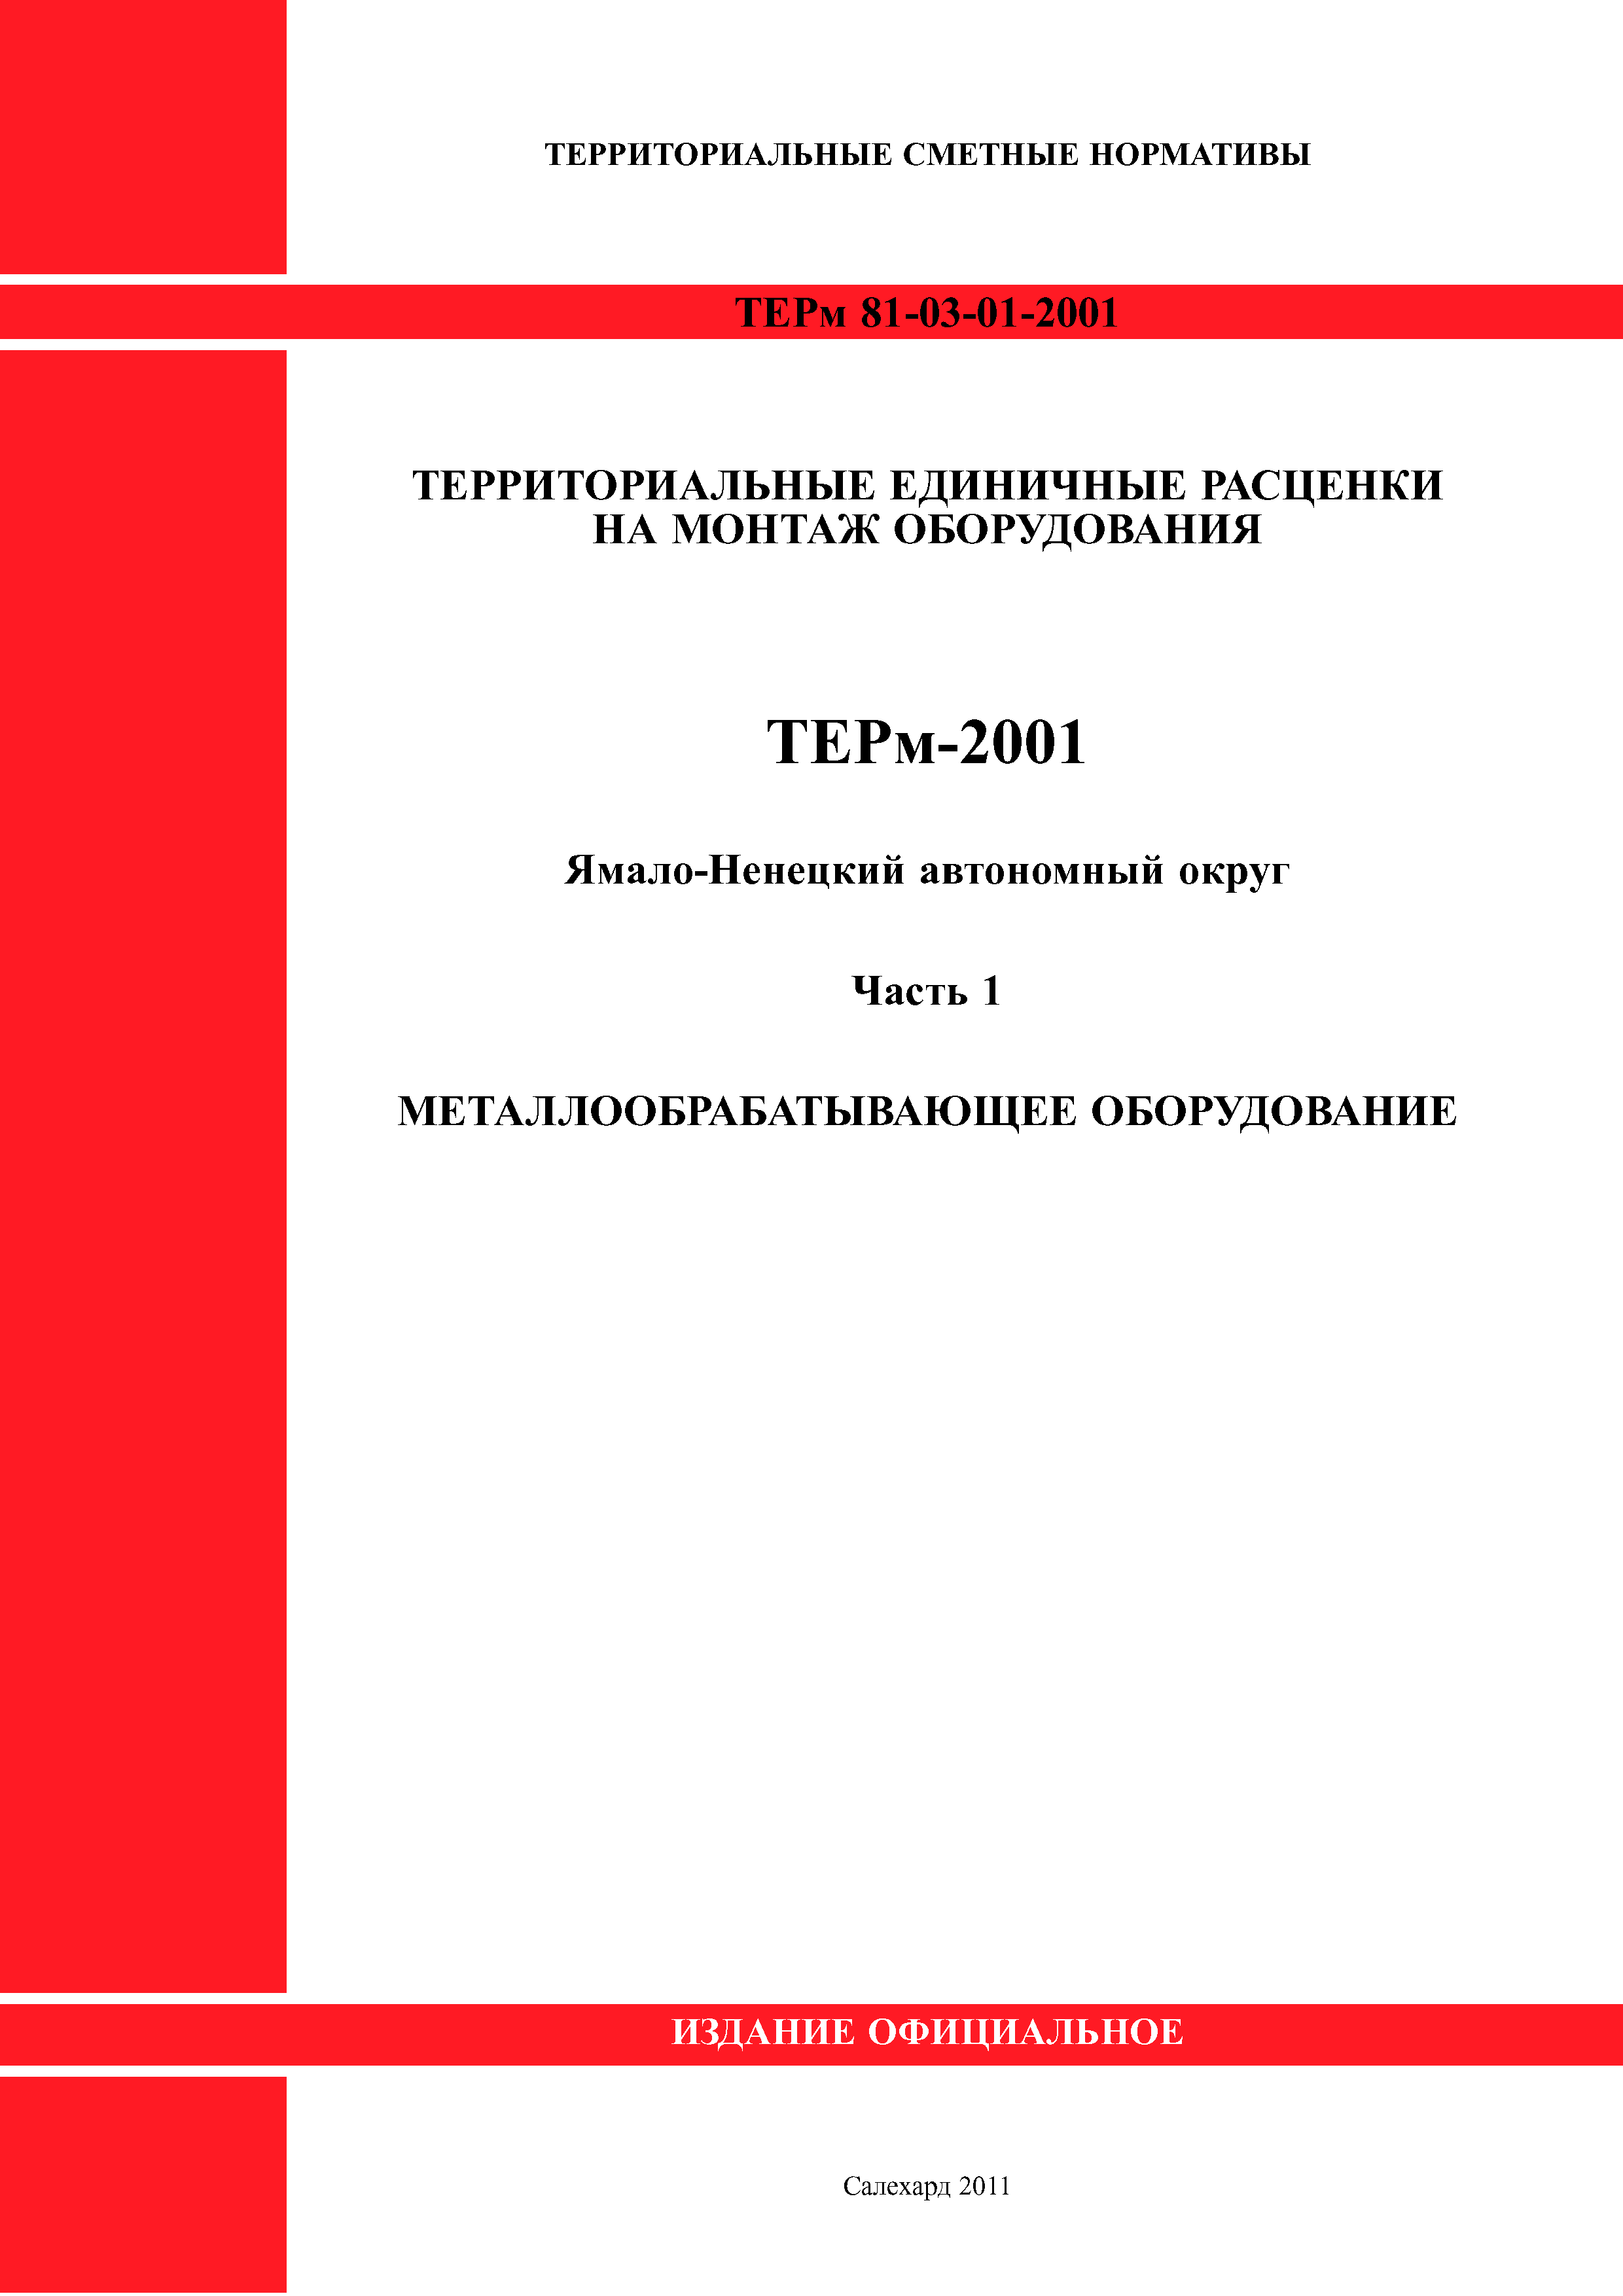 ТЕРм Ямало-Ненецкий автономный округ 01-2001